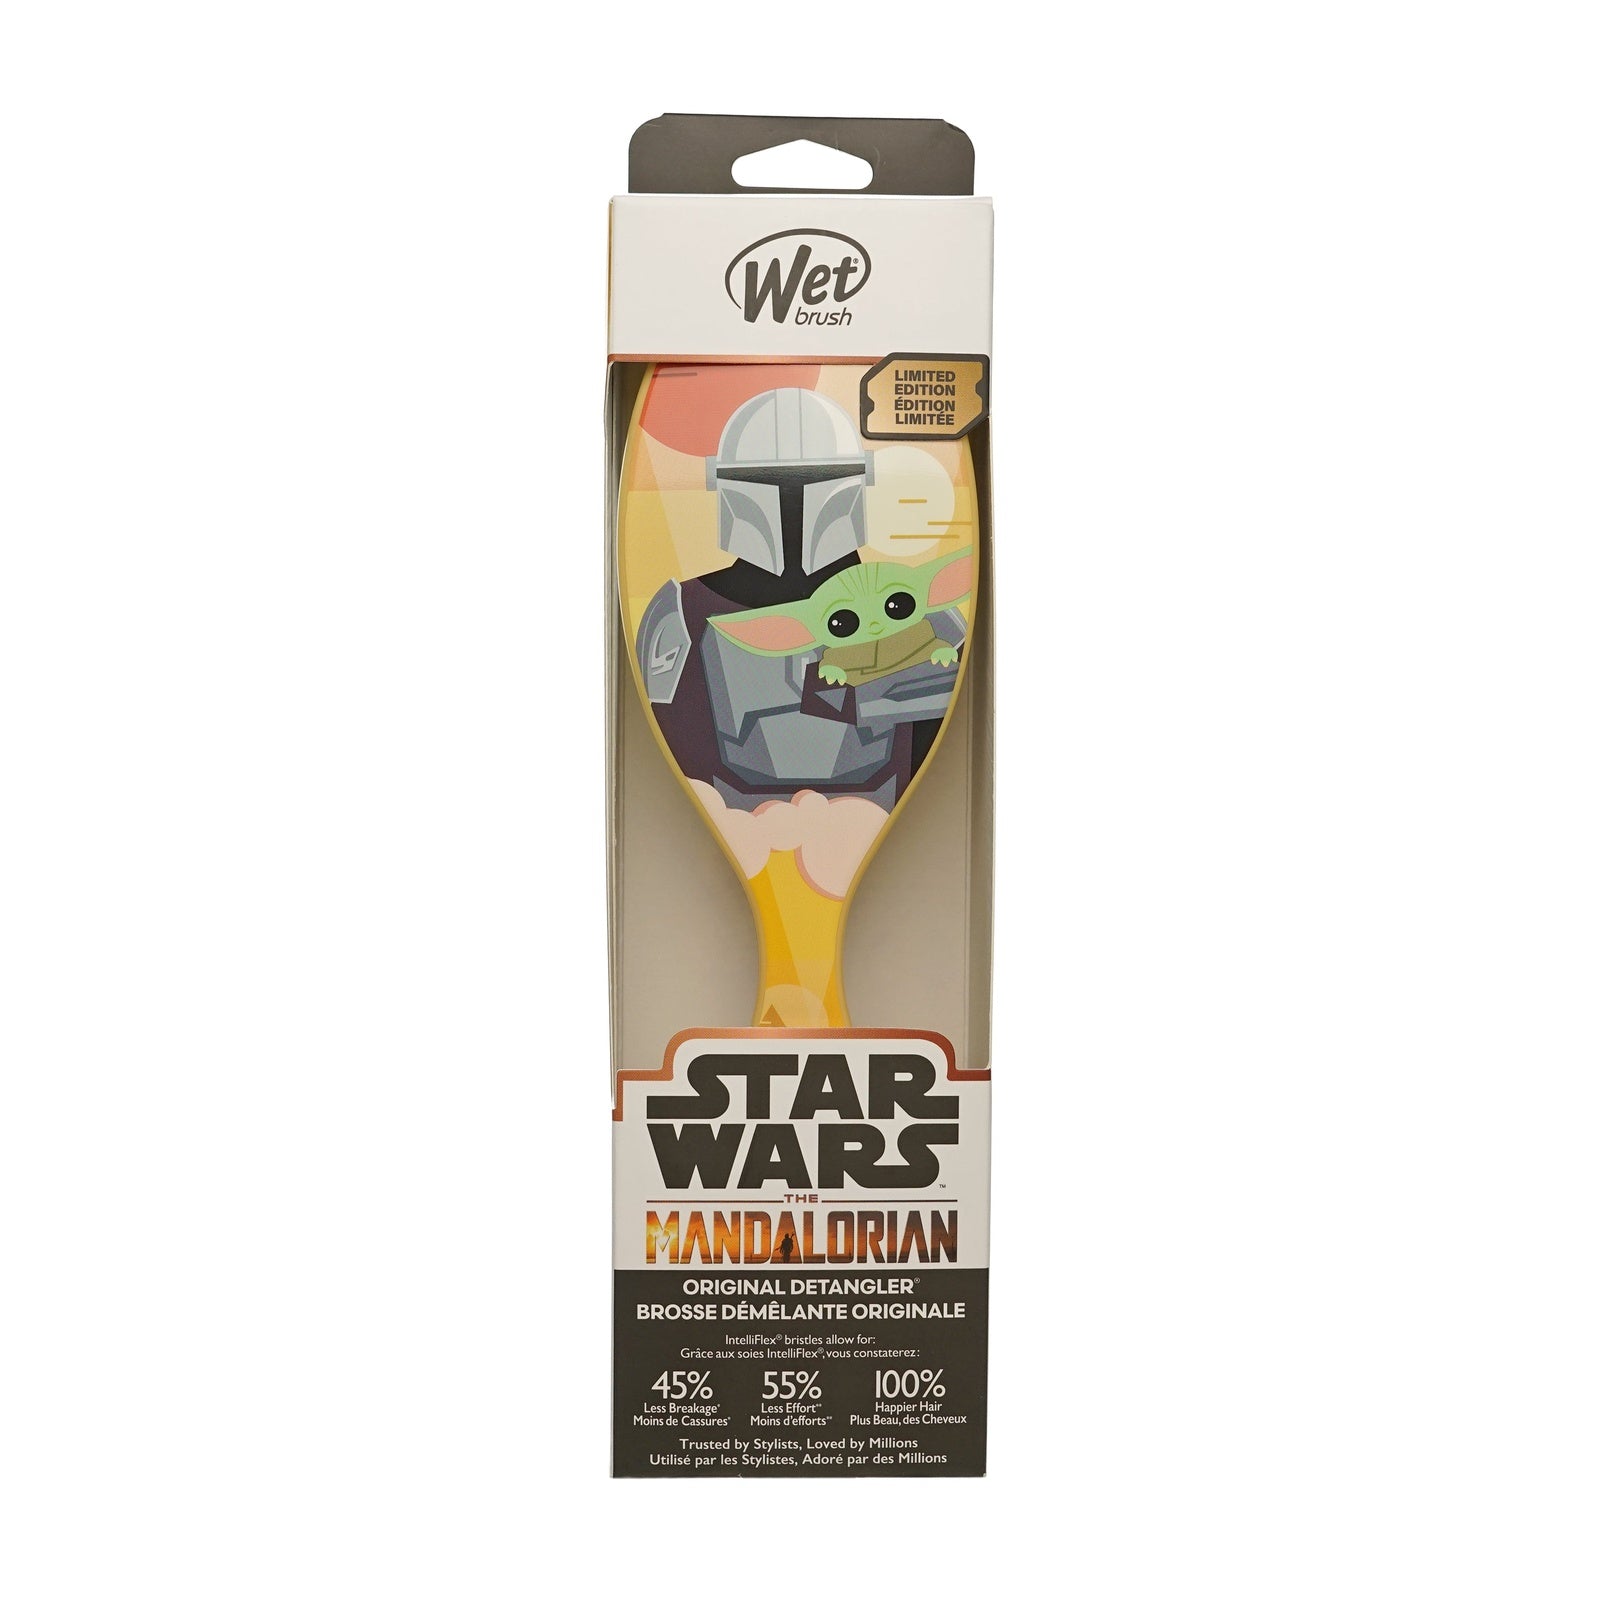 Wet Brush Original Detangler-Star Wars